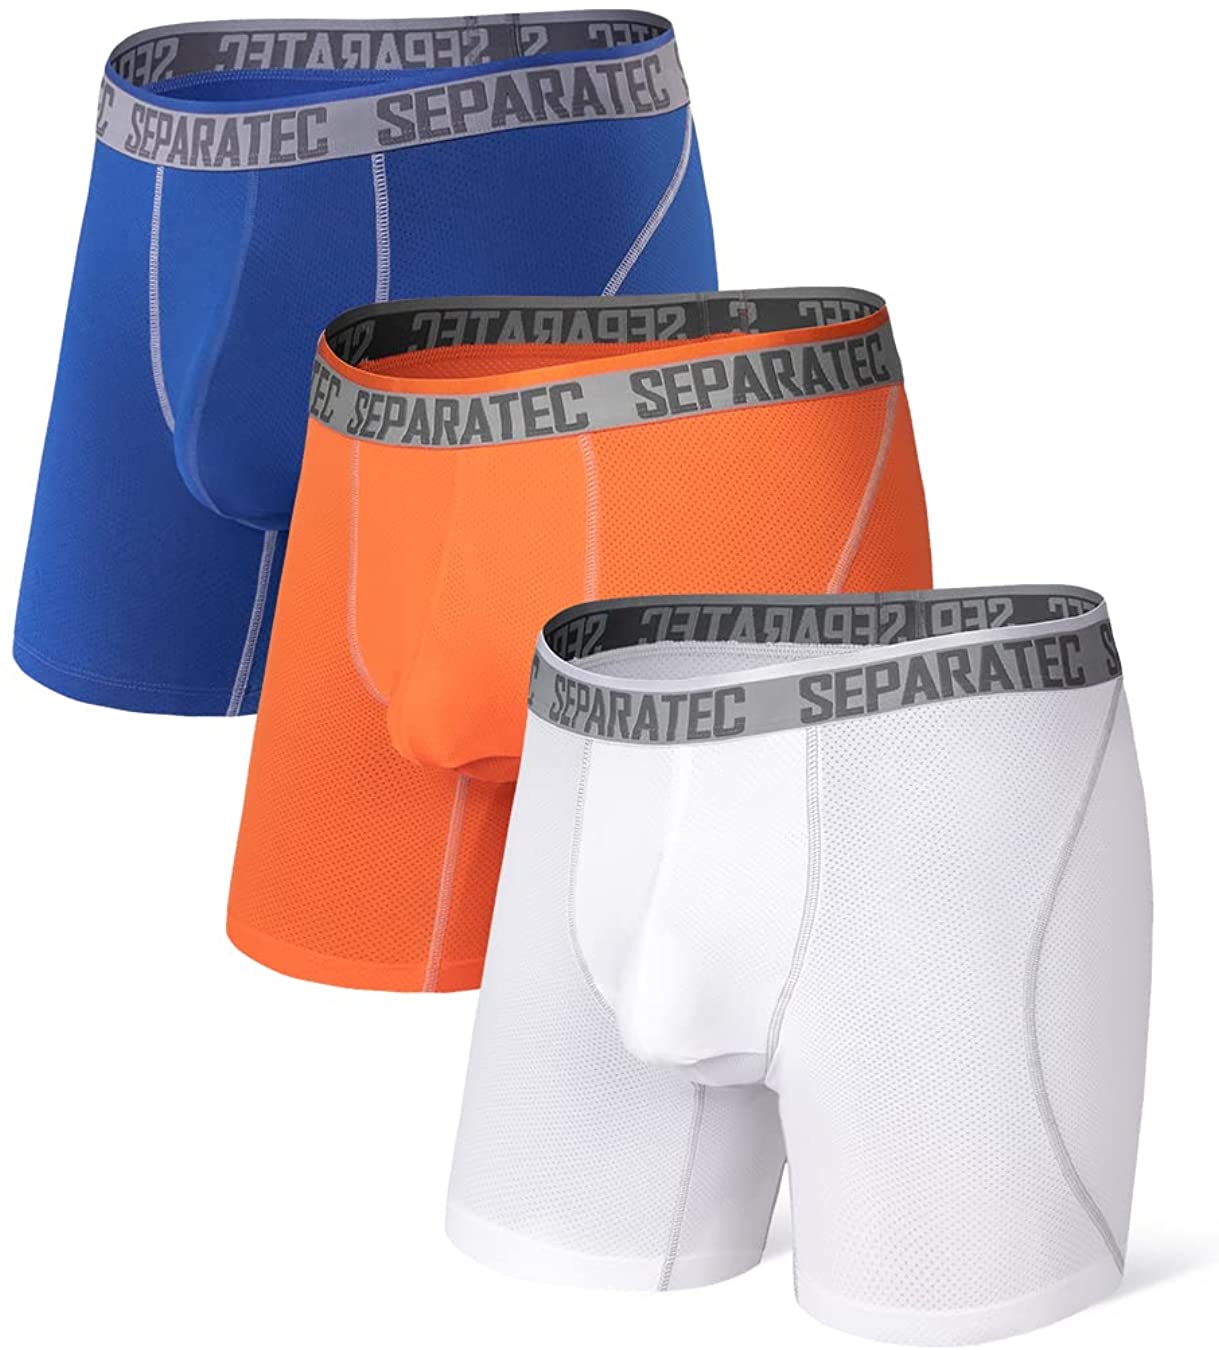 Separatec Men's 3 Pack Sport Performance Dual Pouch Boxer Briefs